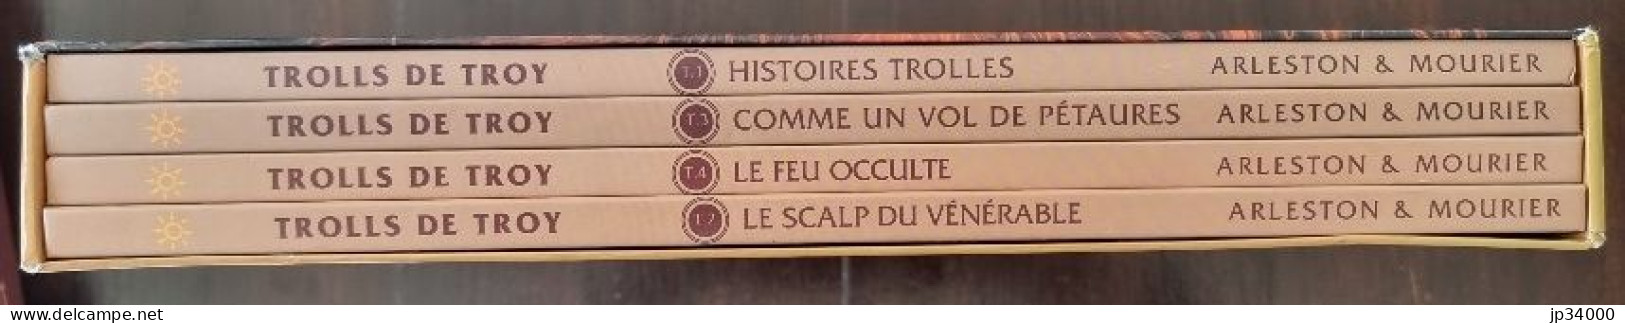 TROLLS DE TROY Intégrale 4 Albums Sous Coffret (1+2+3+4) Edition Soleil 1997/98 - Trolls De Troy